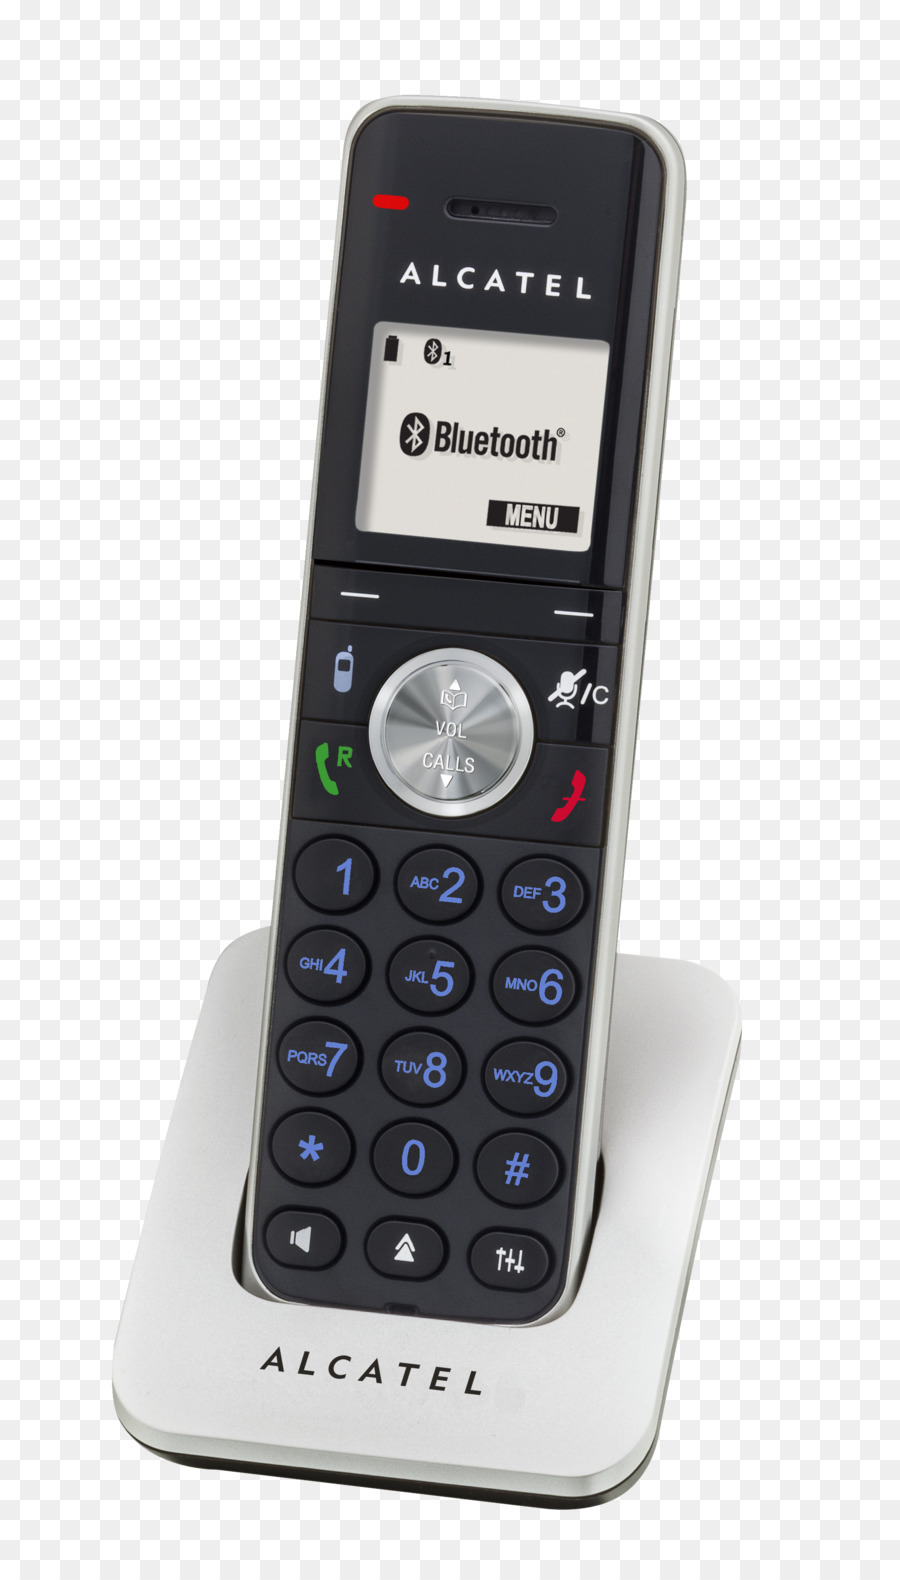 Alcatel Mobile Schnurlos Telefon Handset für Mobile Telefone - Telefon zu Hause